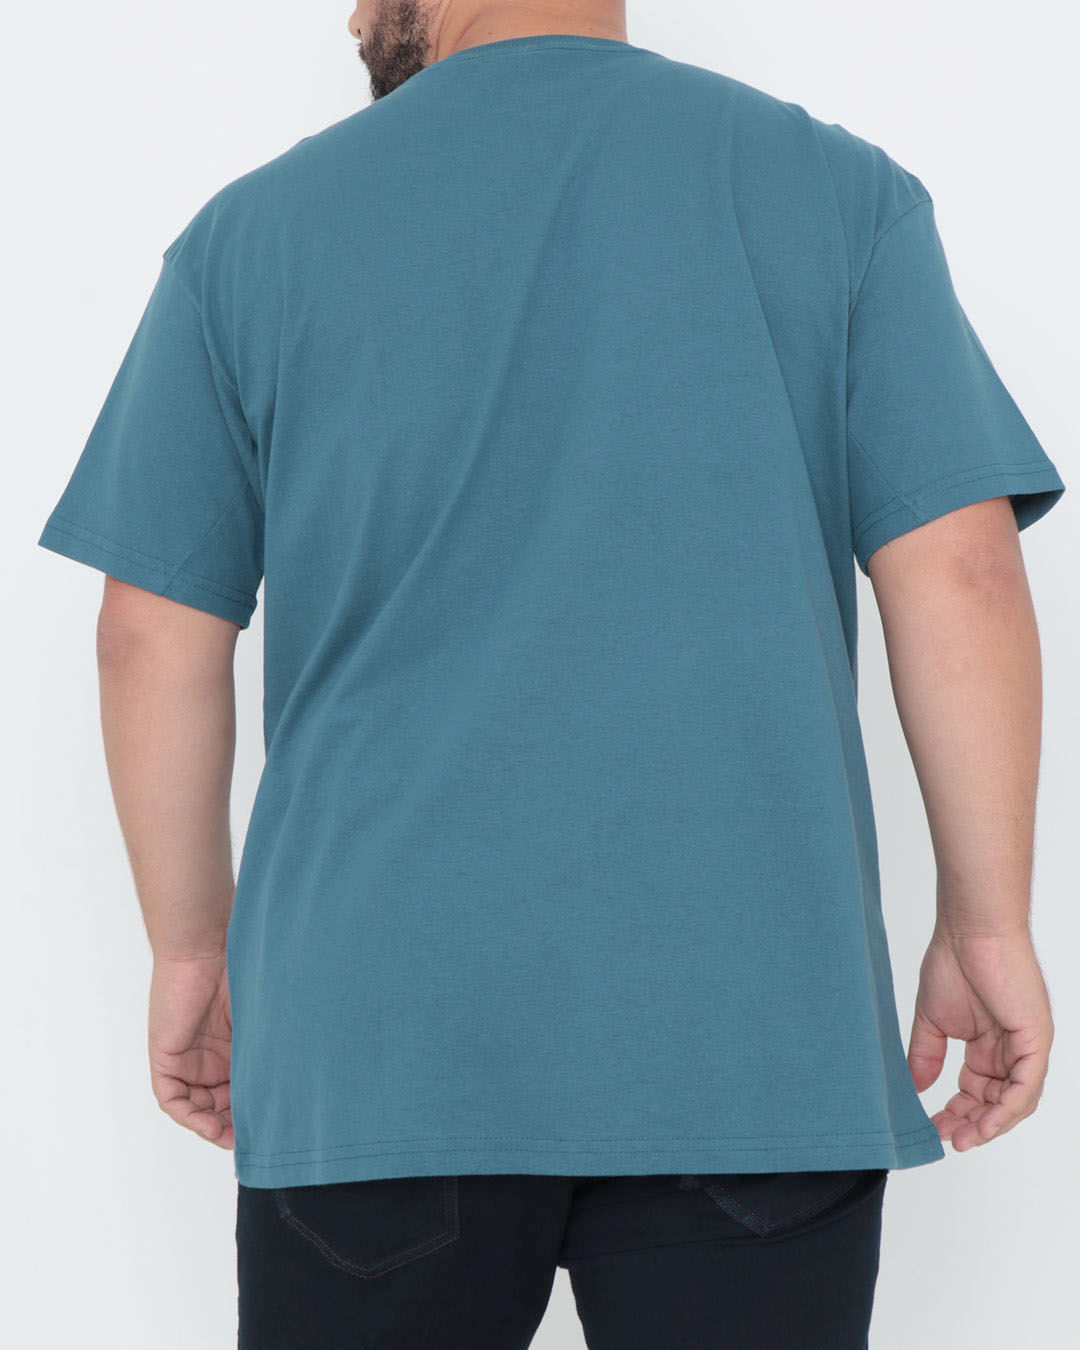 Camiseta-Plus-Size-Manga-Curta-Fatal-Azul-Petroleo